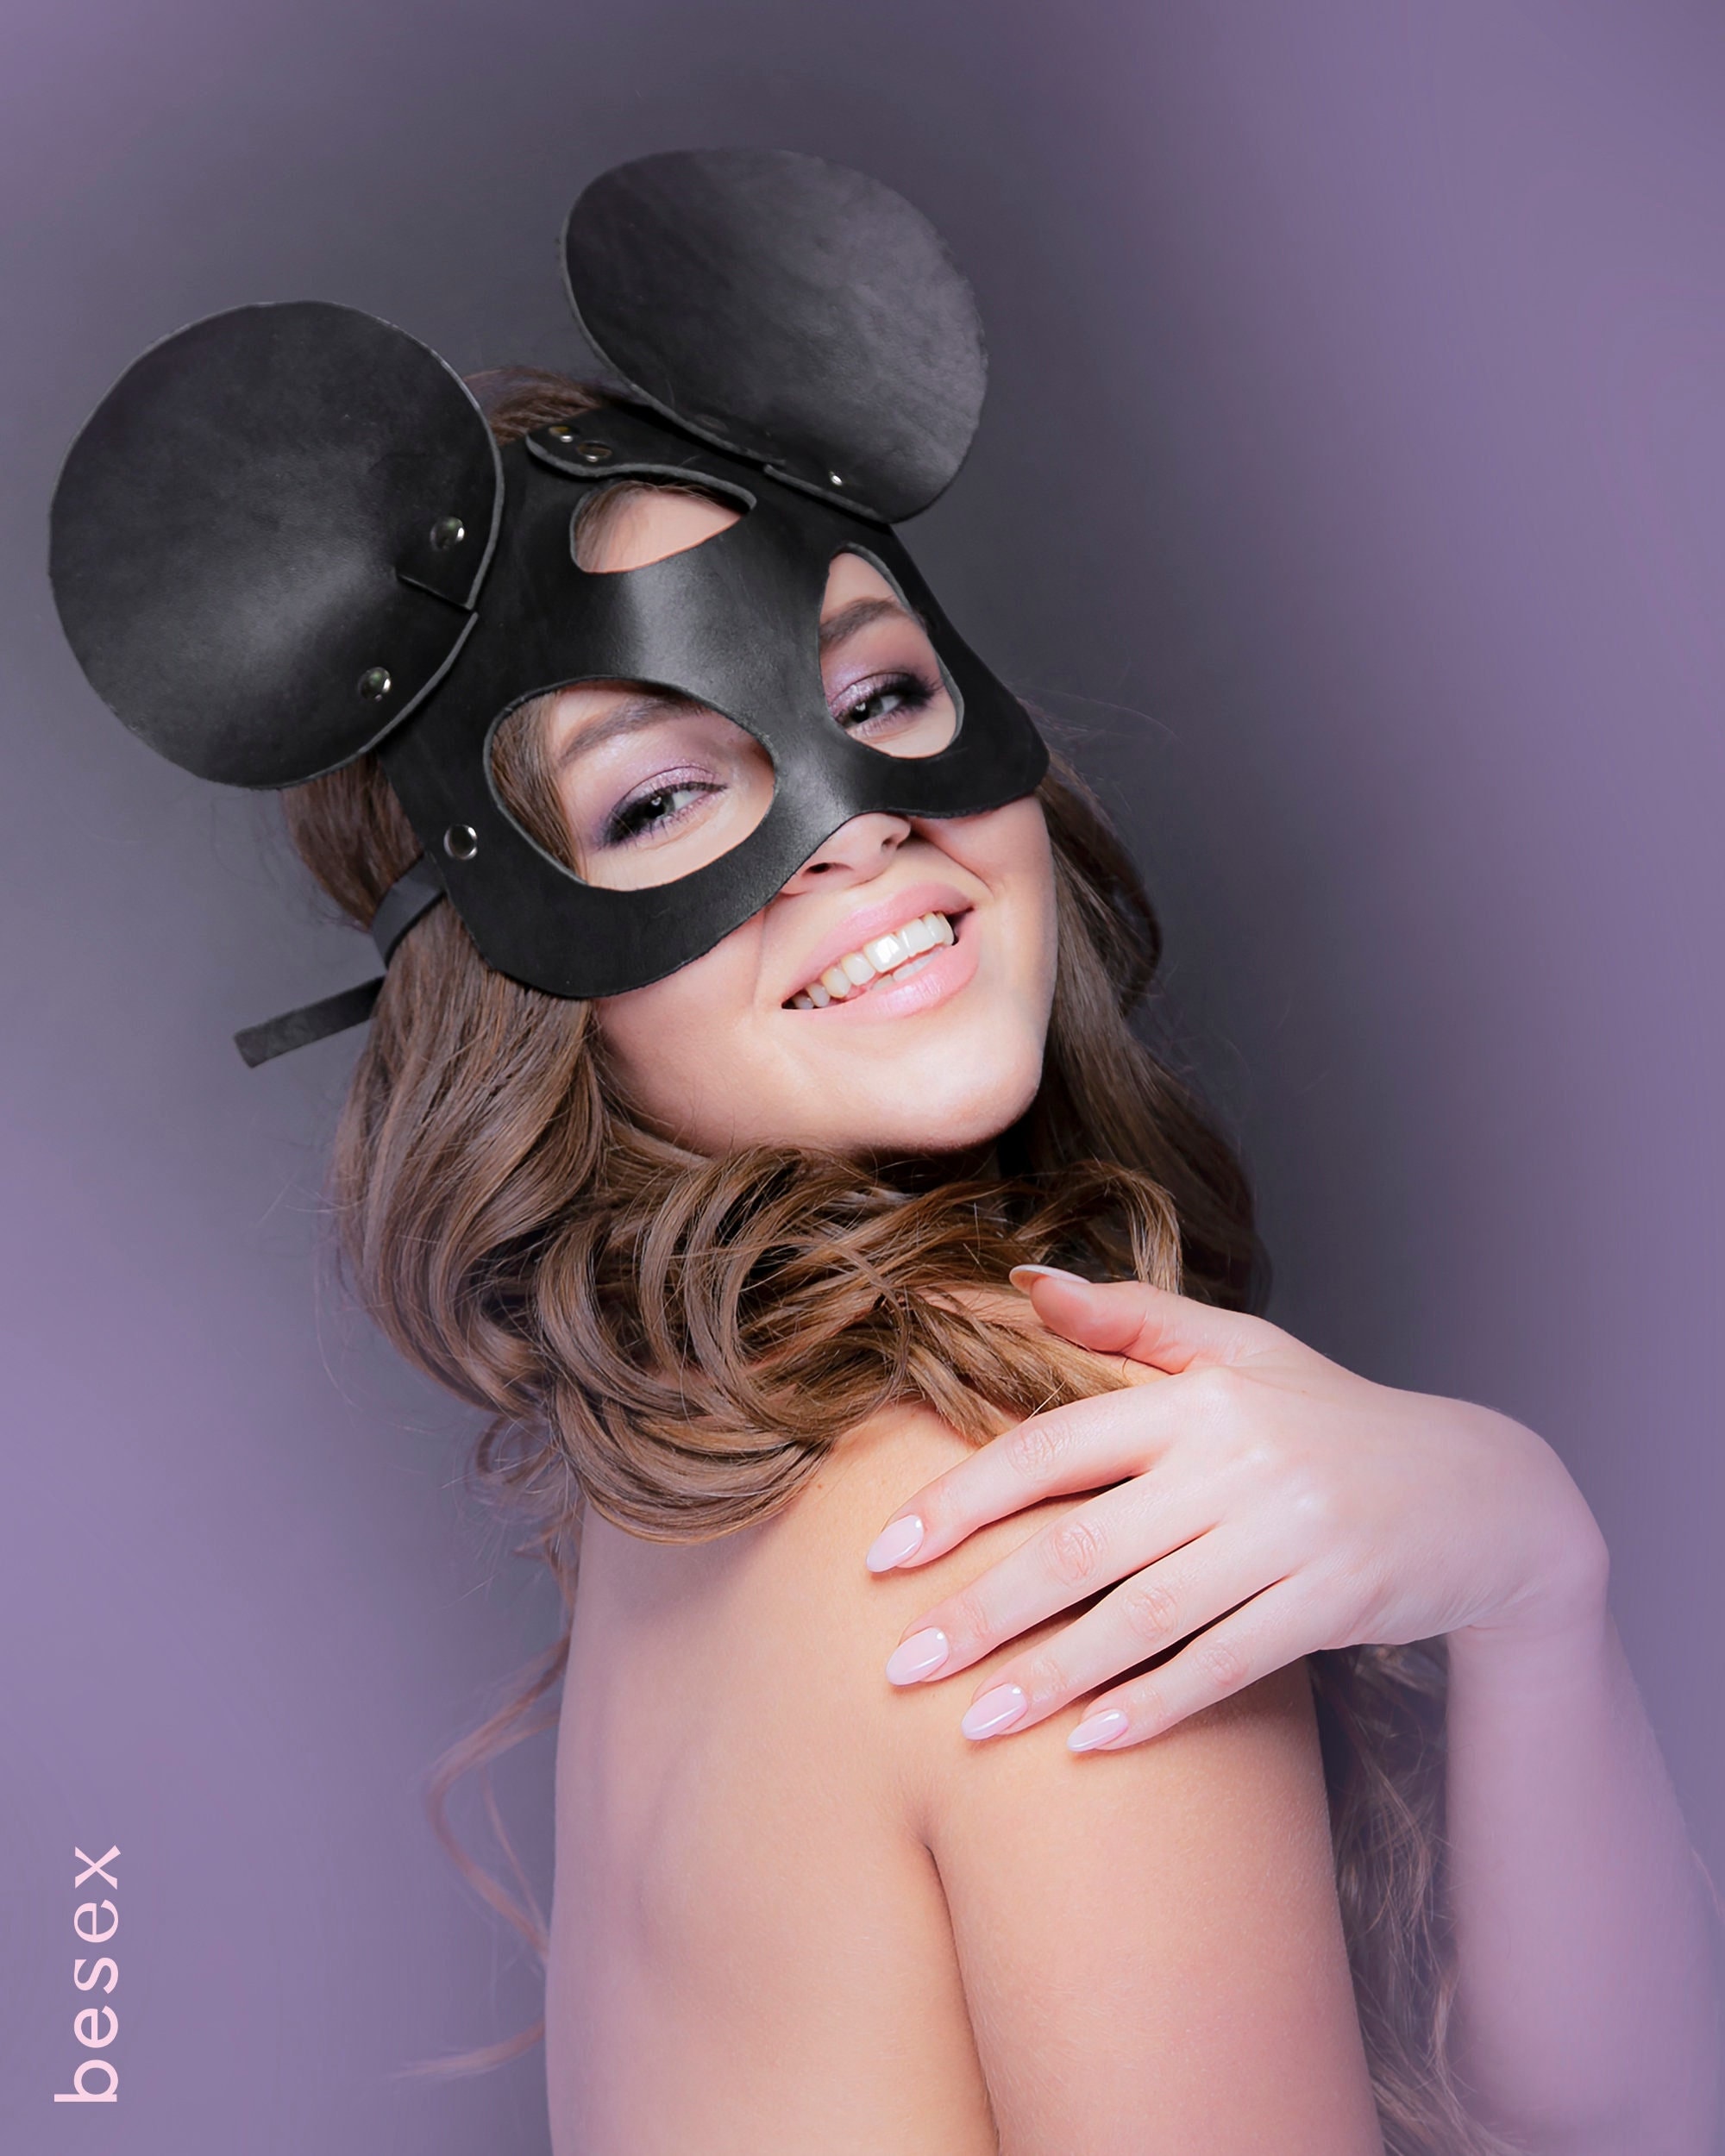 Shop Sex Mask image pic